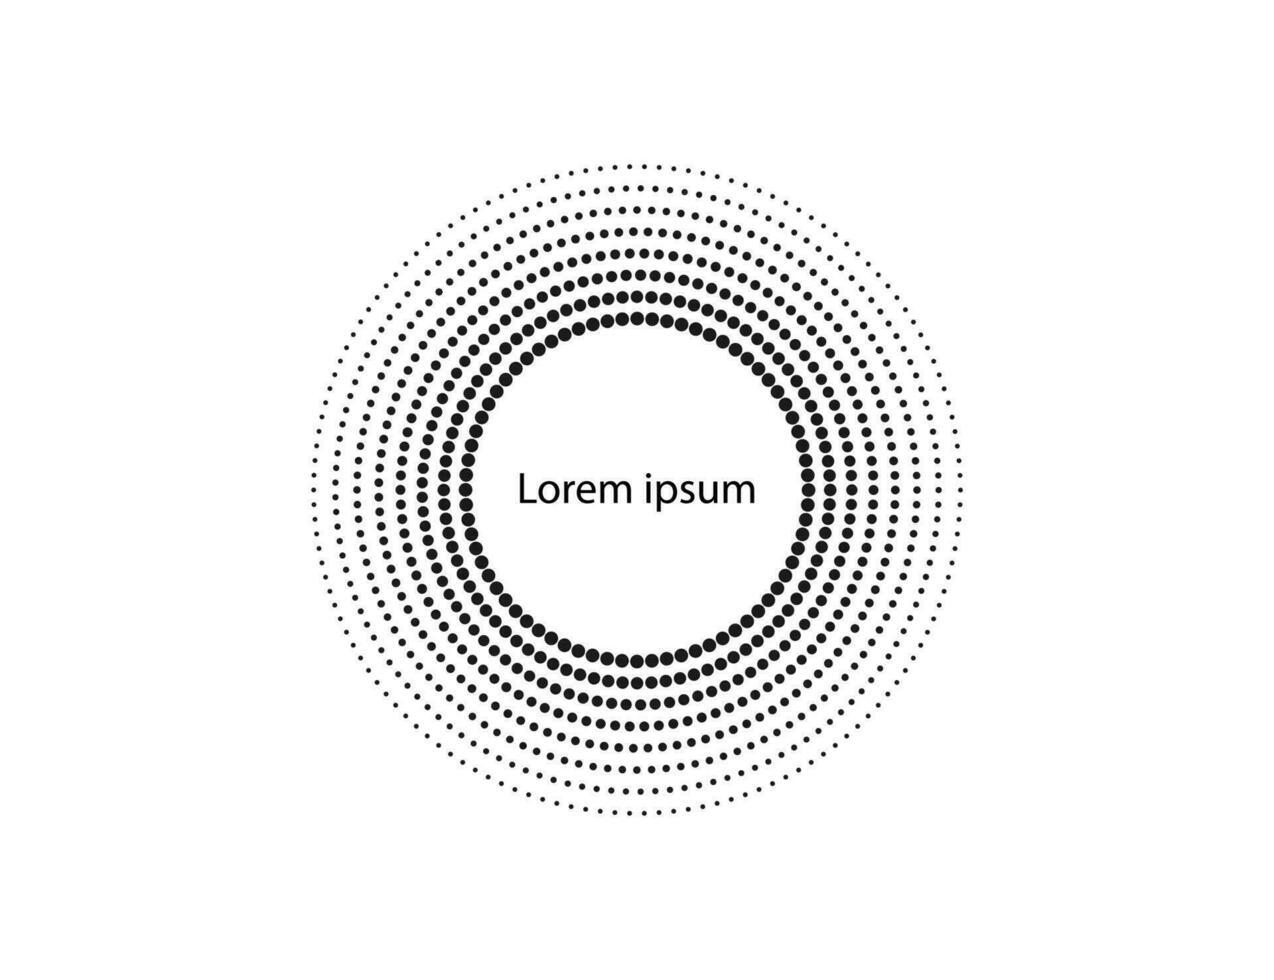 Halbton Punkte im Kreis form, Logo. Vektor Illustration.